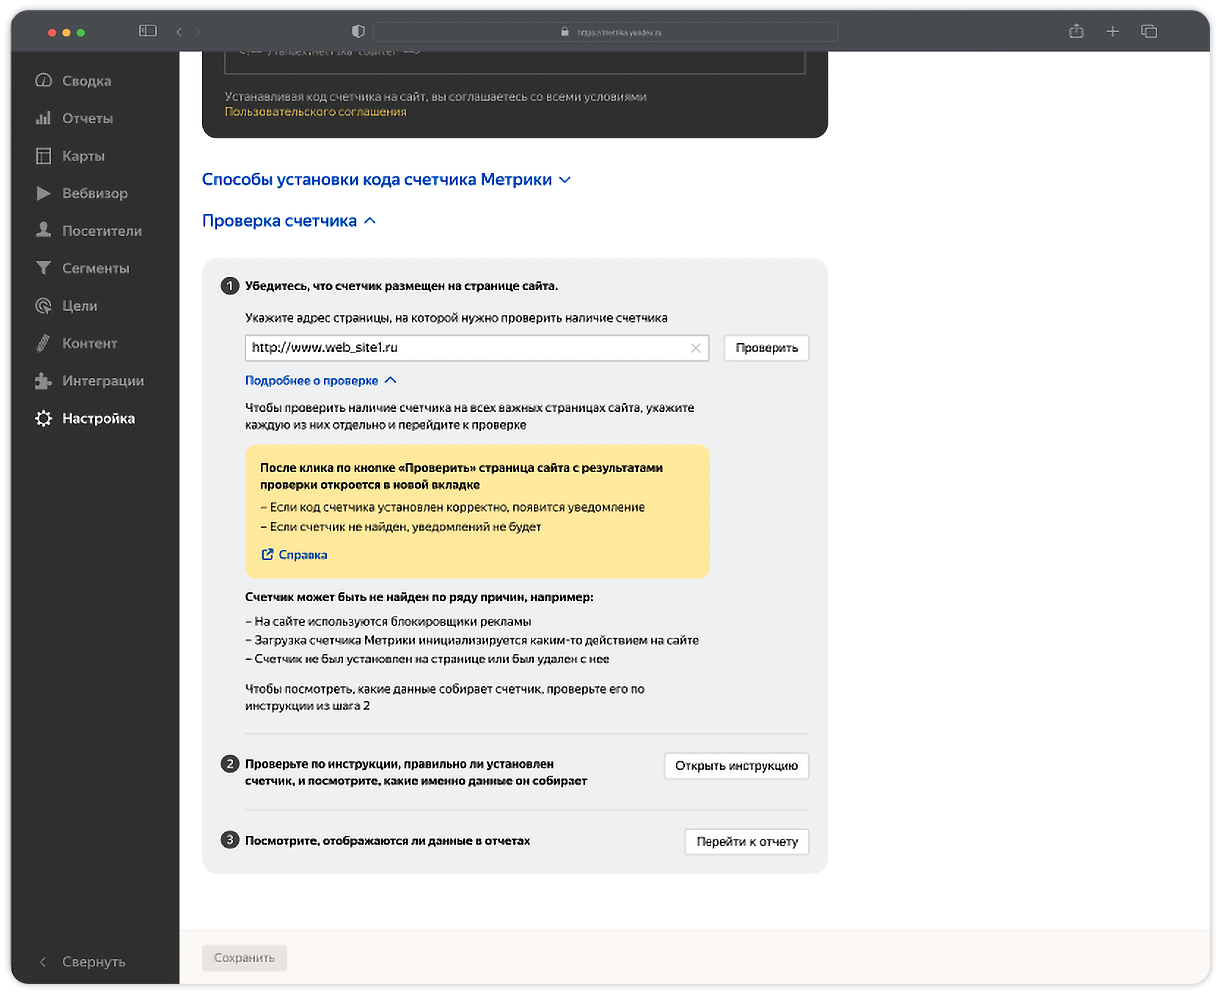 Новые инструменты Метрики для проверки и мониторинга работы счетчика — Новости рекламных технологий Яндекса1